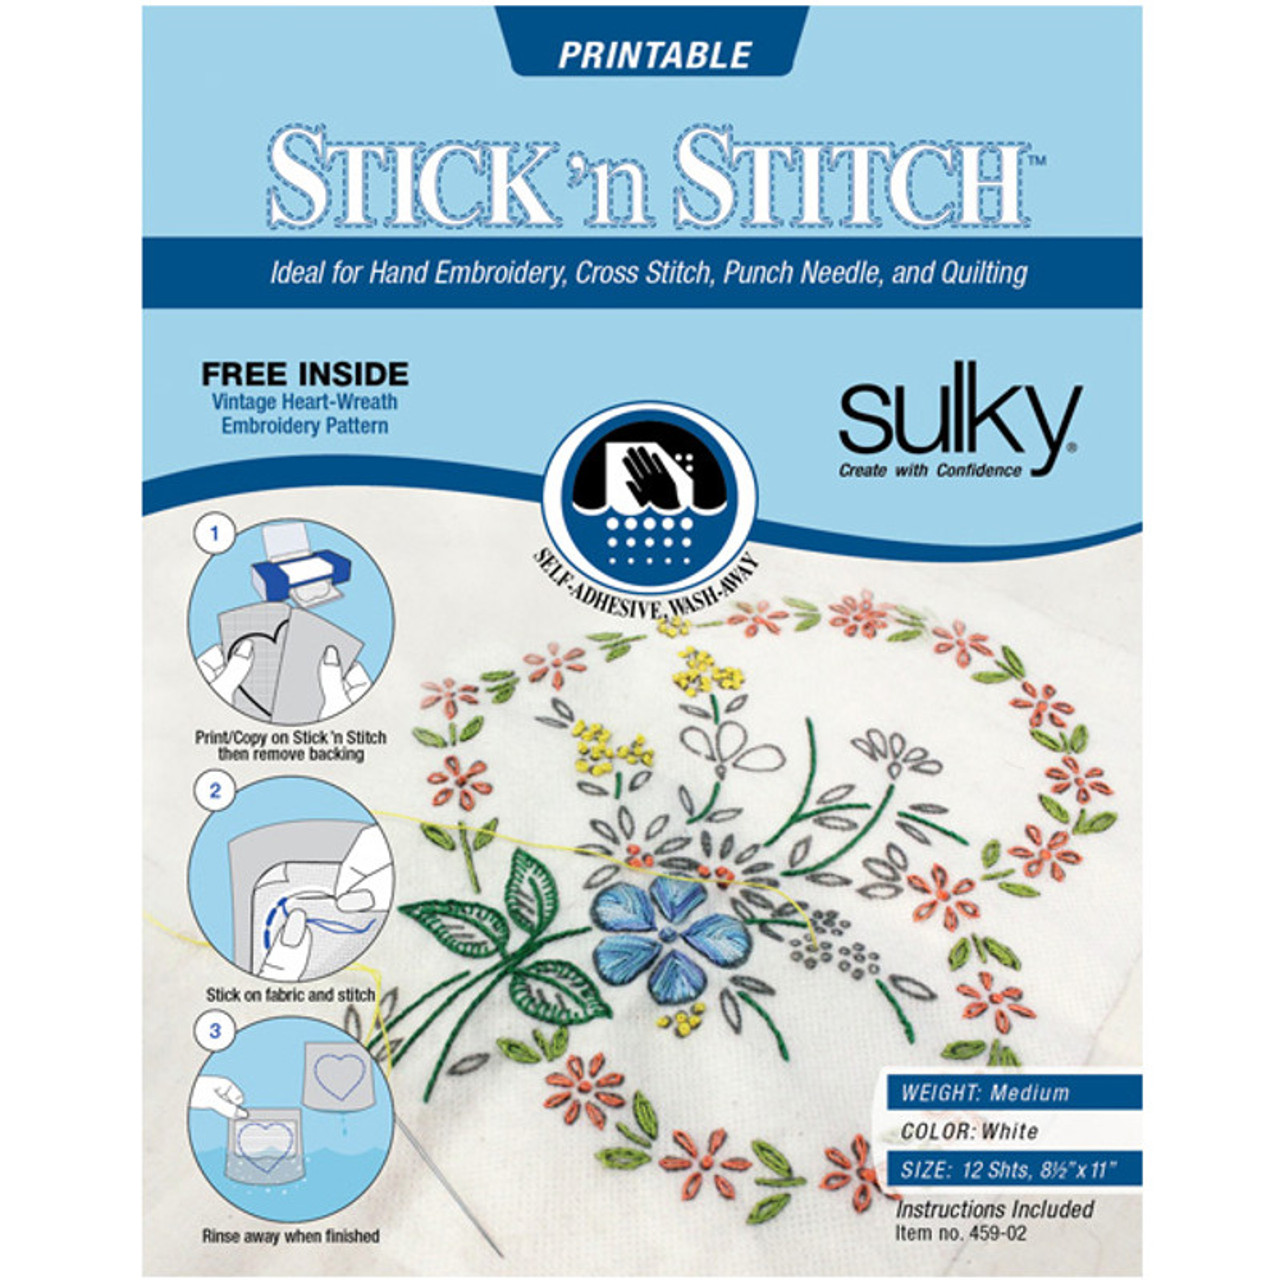 Stick & Stitch, Fun & Floral, Pack of 9 designs